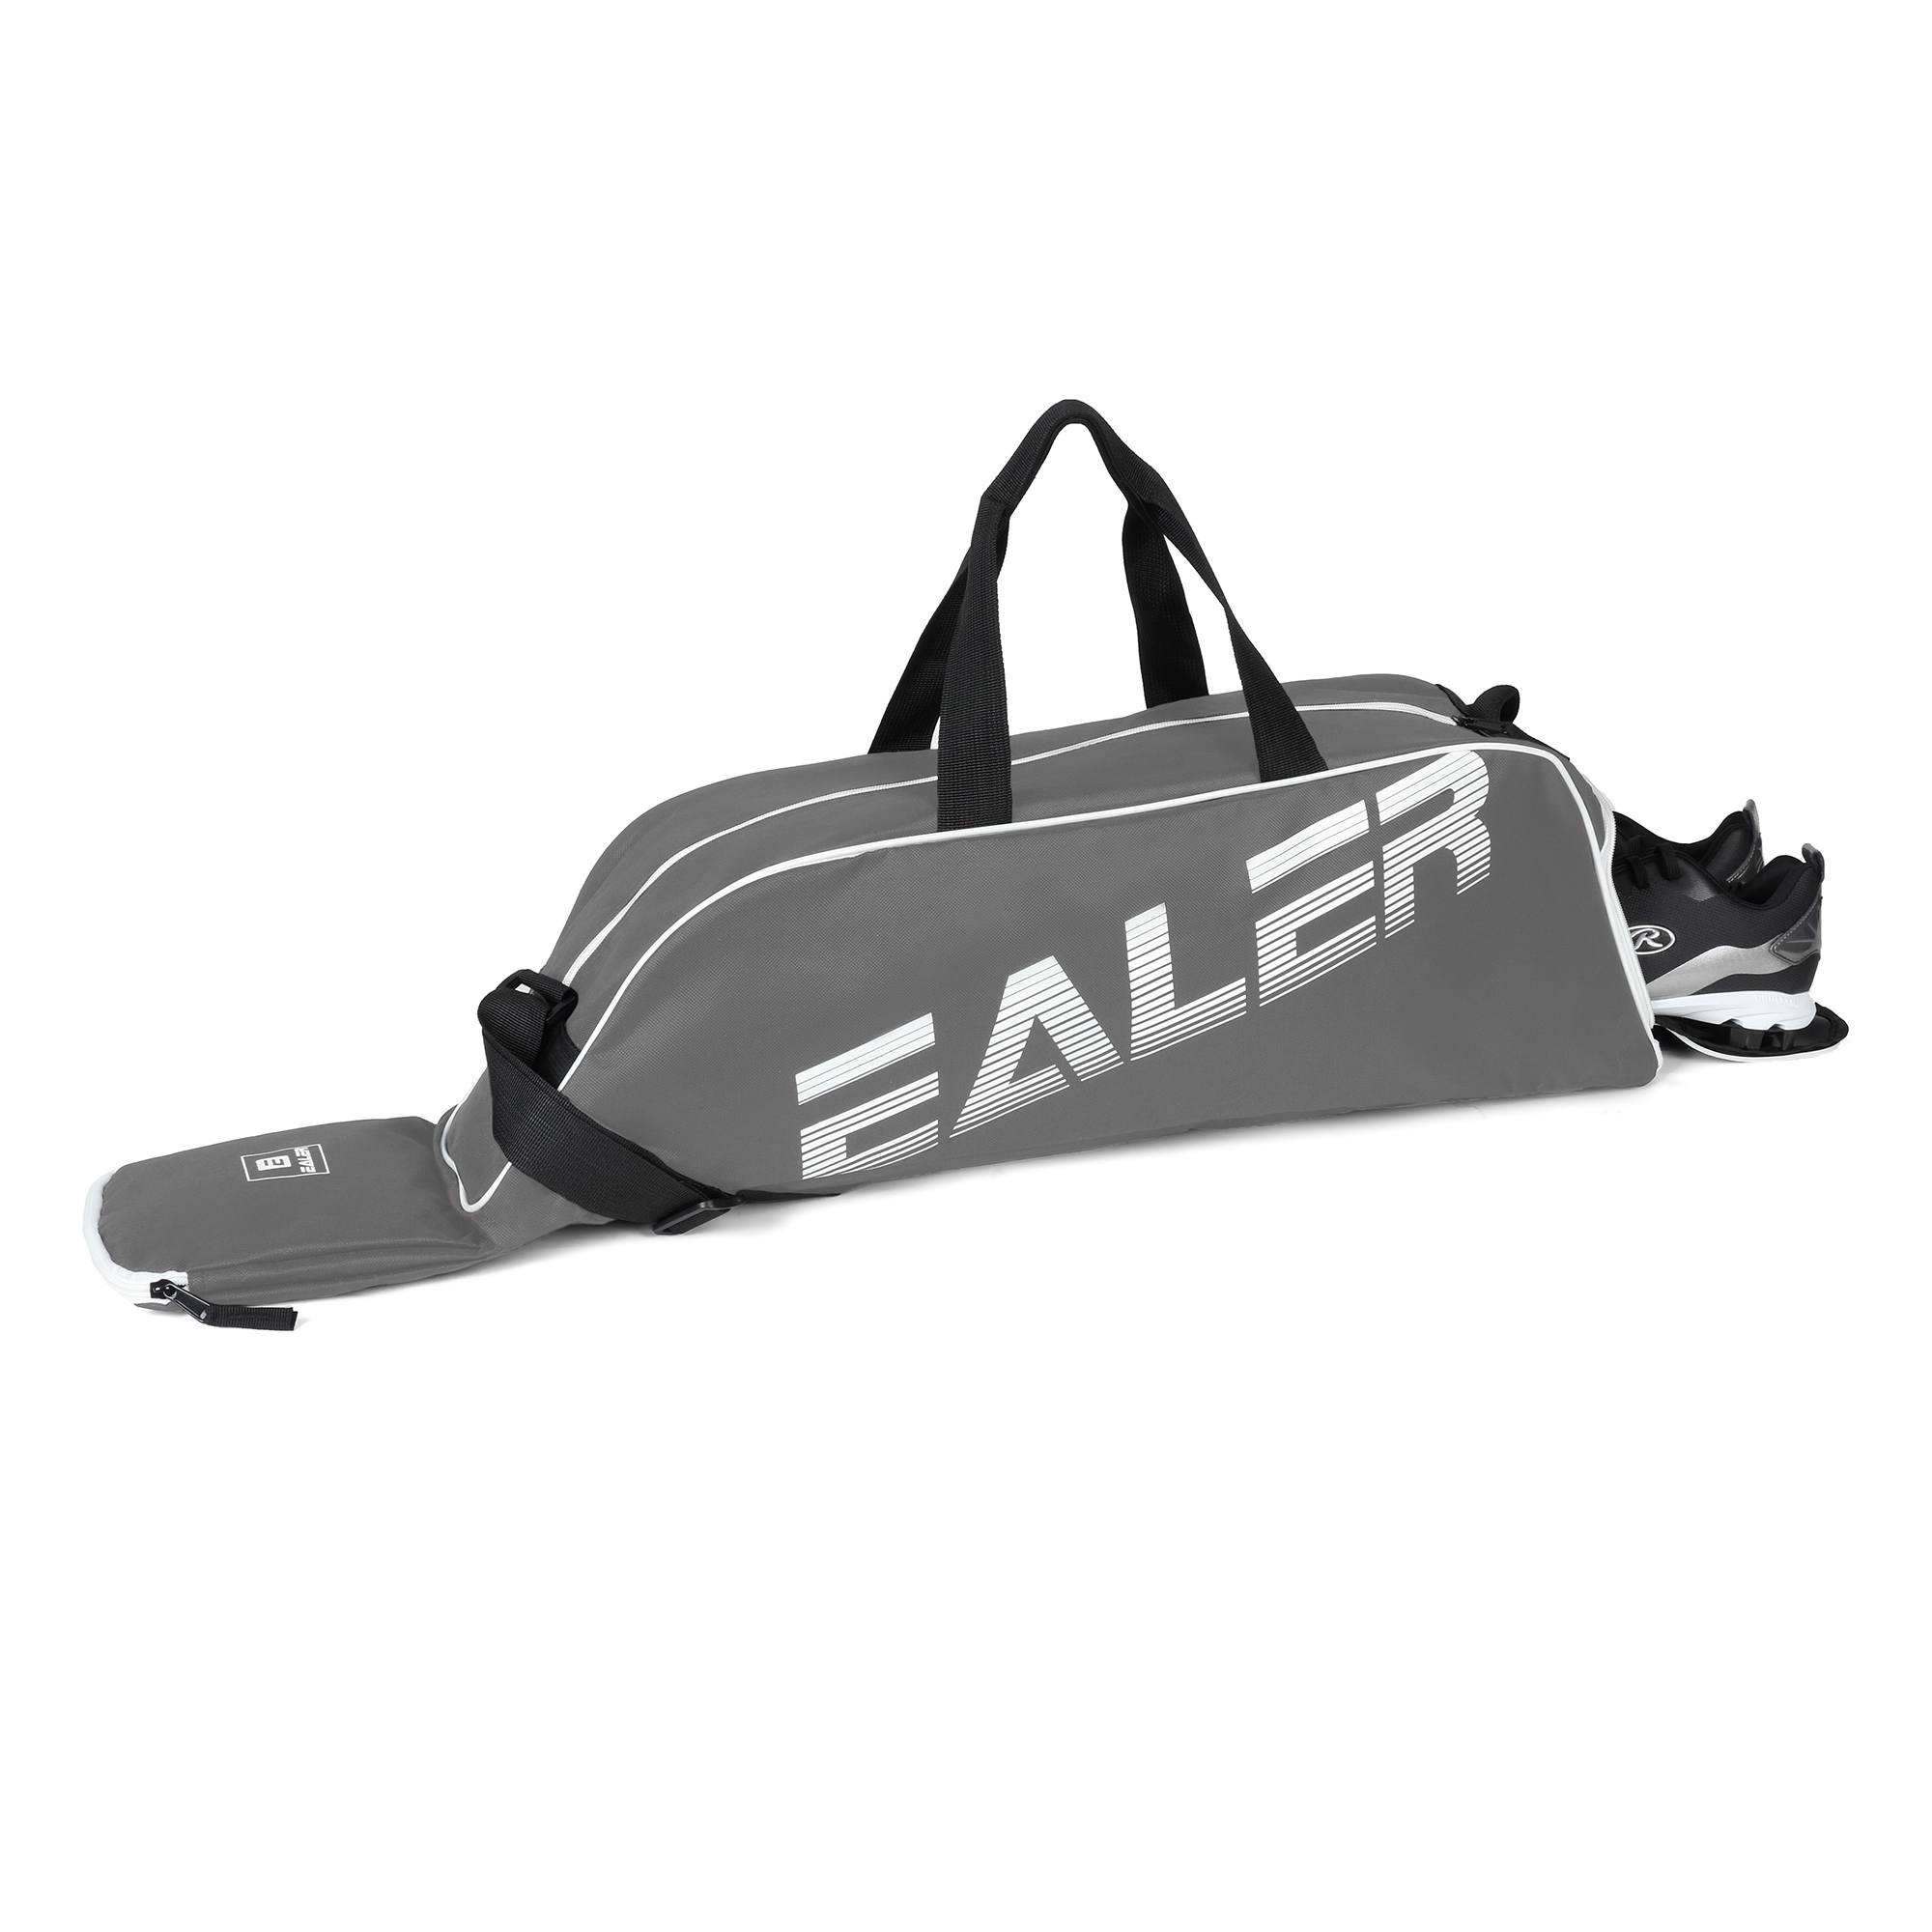 EALER Baseball Bat Tote Bag & T-ball, Softball Equipment Bag